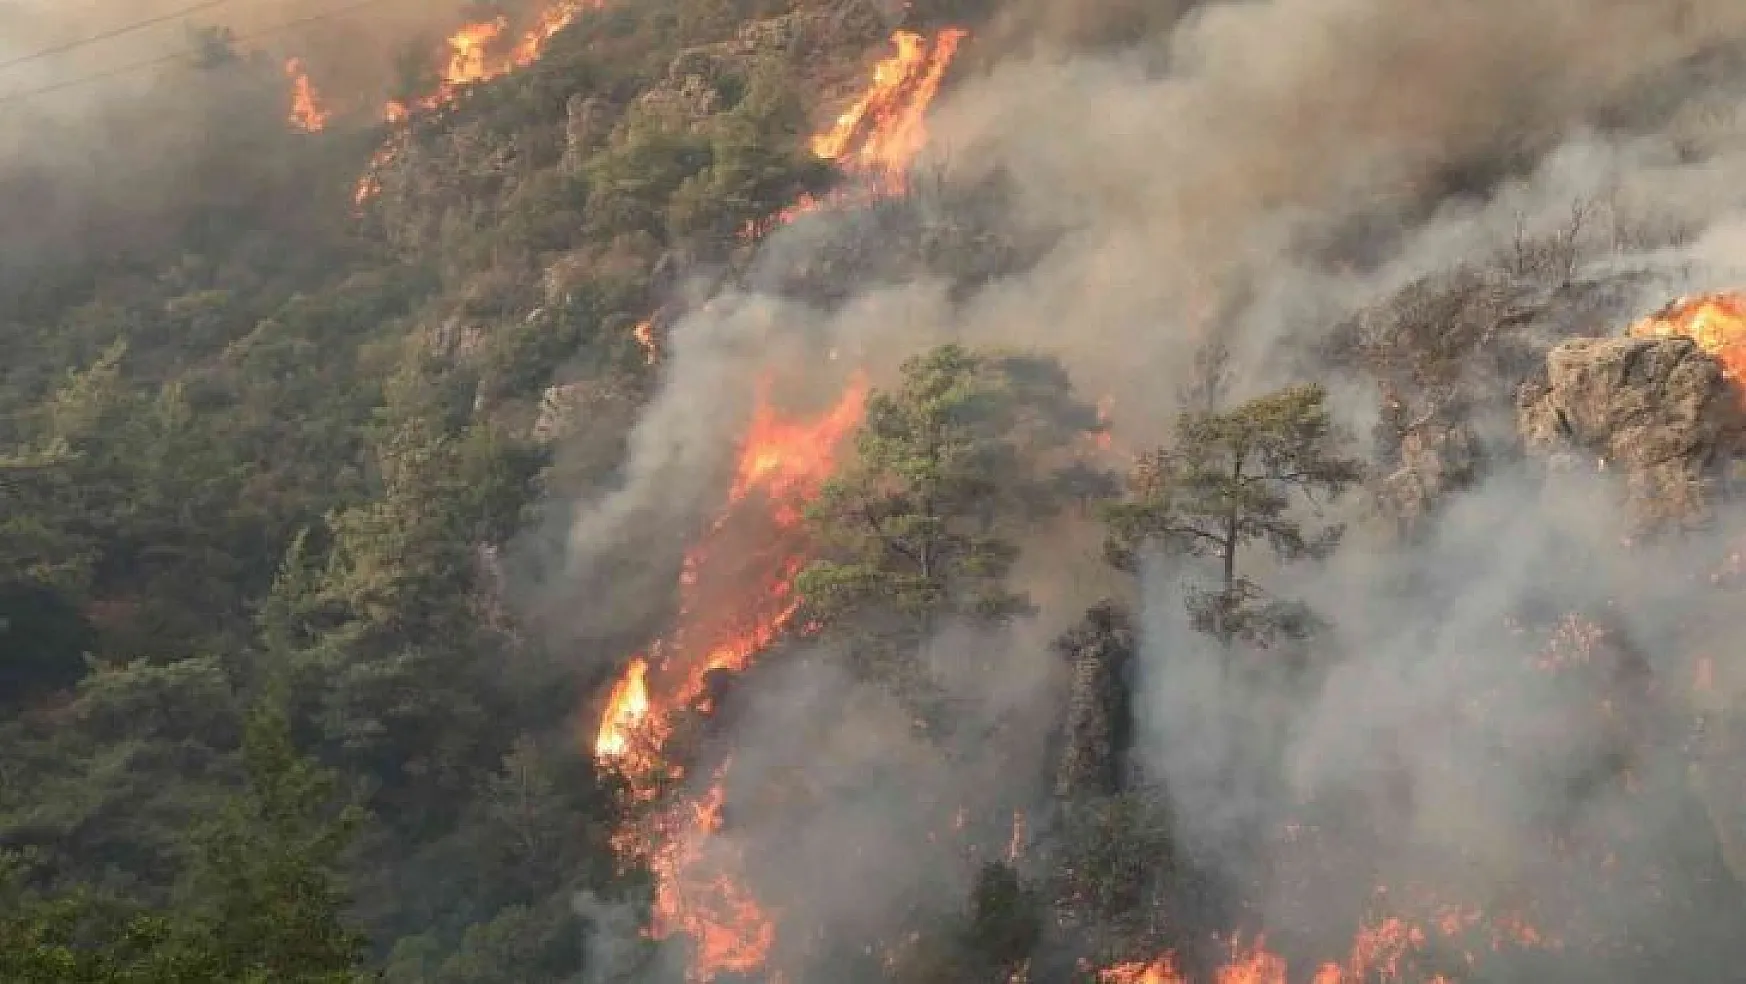 Orman yangınlarına karşı mücadele seferberliği